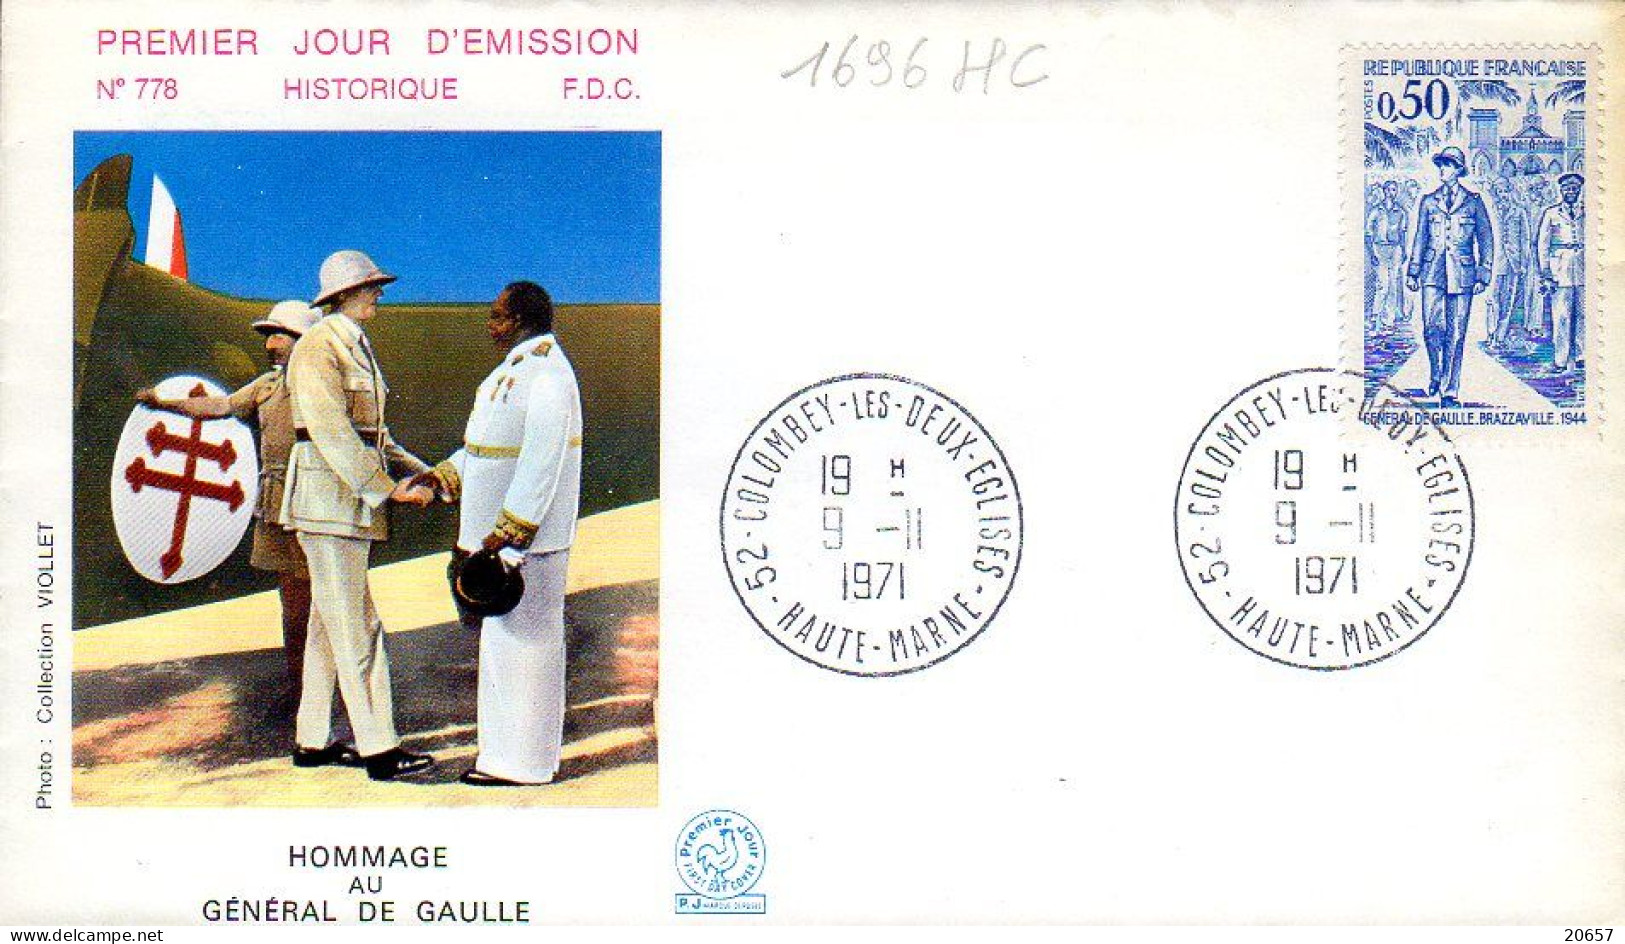 France 1696HC Fdc Hommage Au Général De Gaulle - De Gaulle (General)